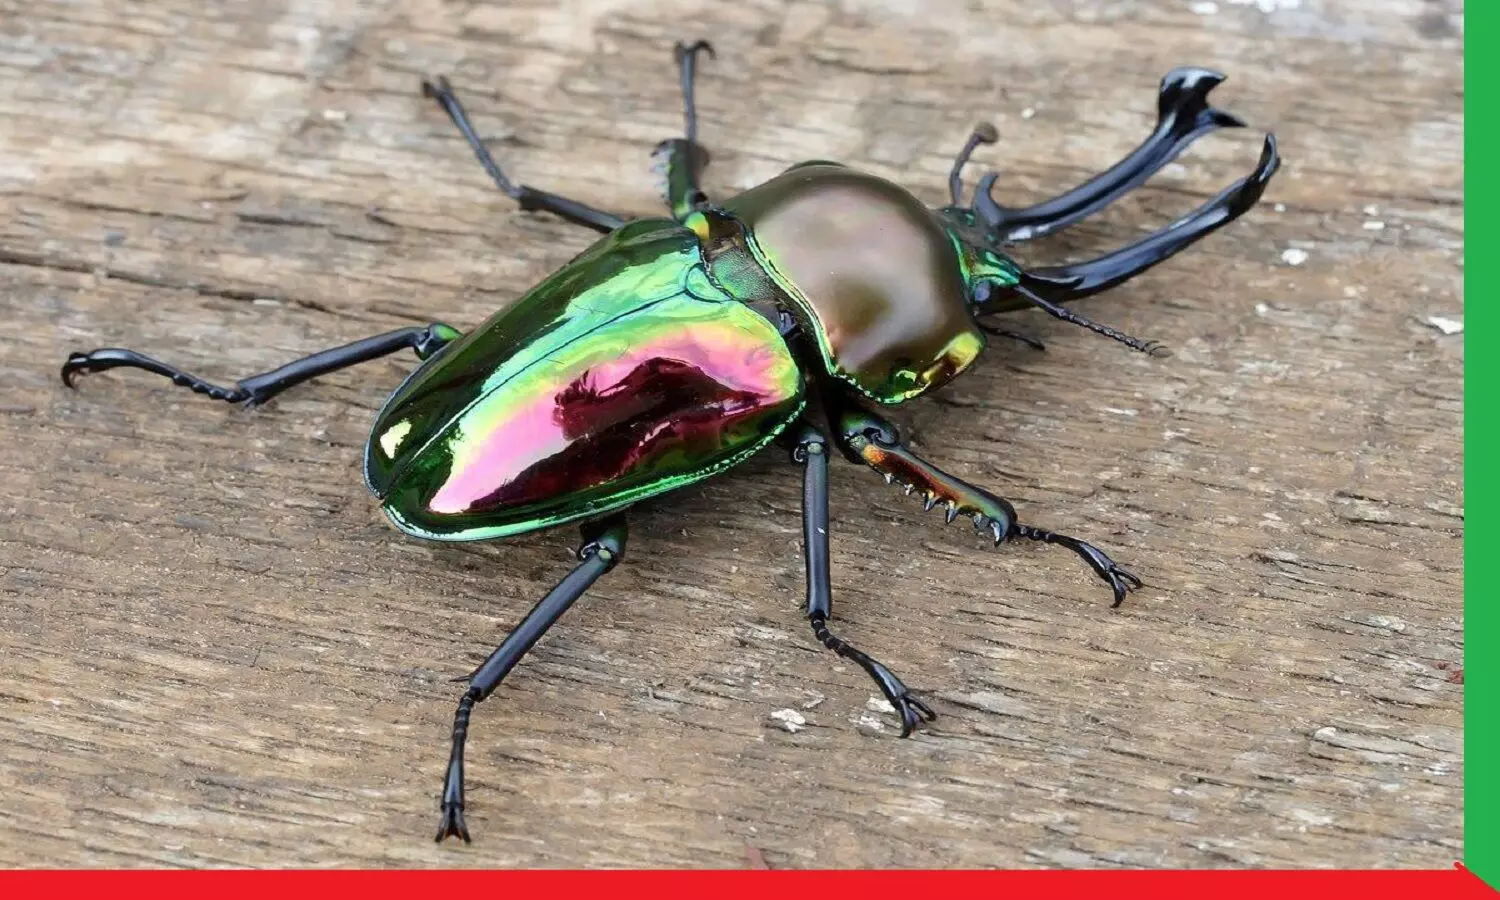 Stag Beetle: ऐसा कीड़ा जो आपकी किस्मत बदल सकता है, कभी दिखे तो मारे नहीं, पकड़ के रख लें